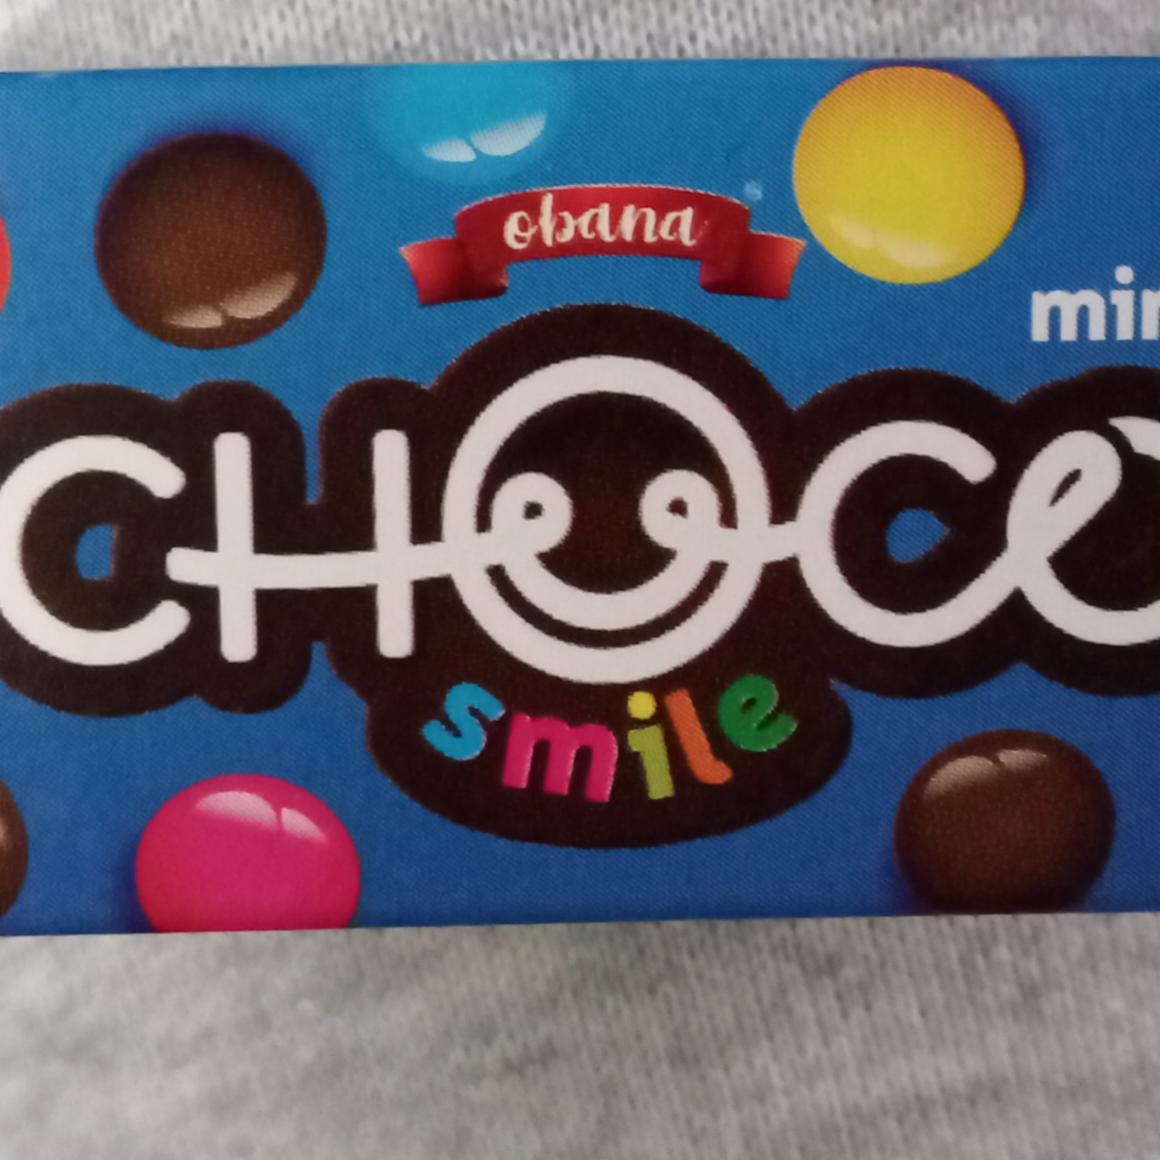 Фото - Драже шоколадне Choco Smile Mini Obana